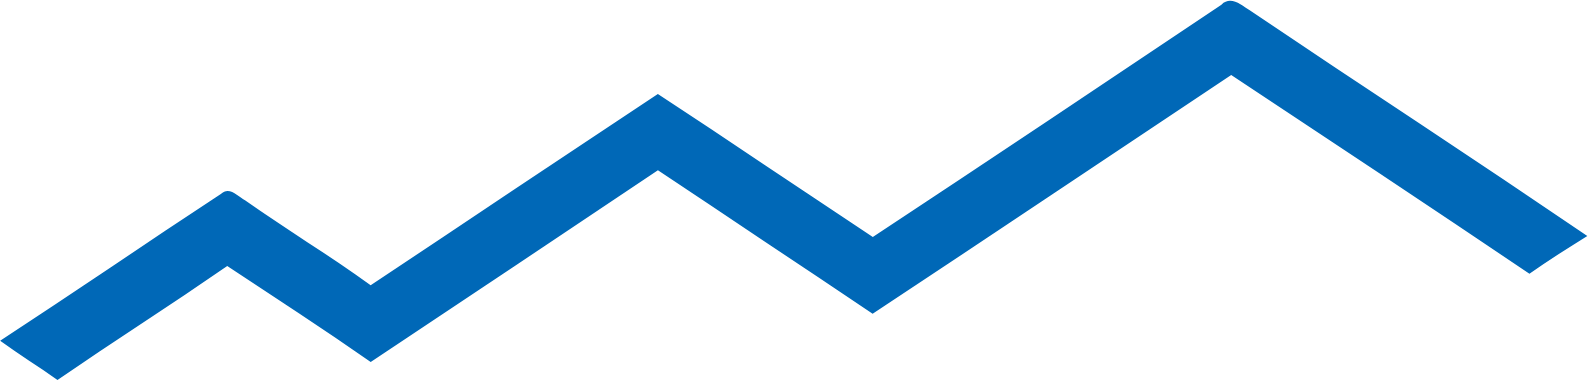 Kunlun Tech logo (transparent PNG)